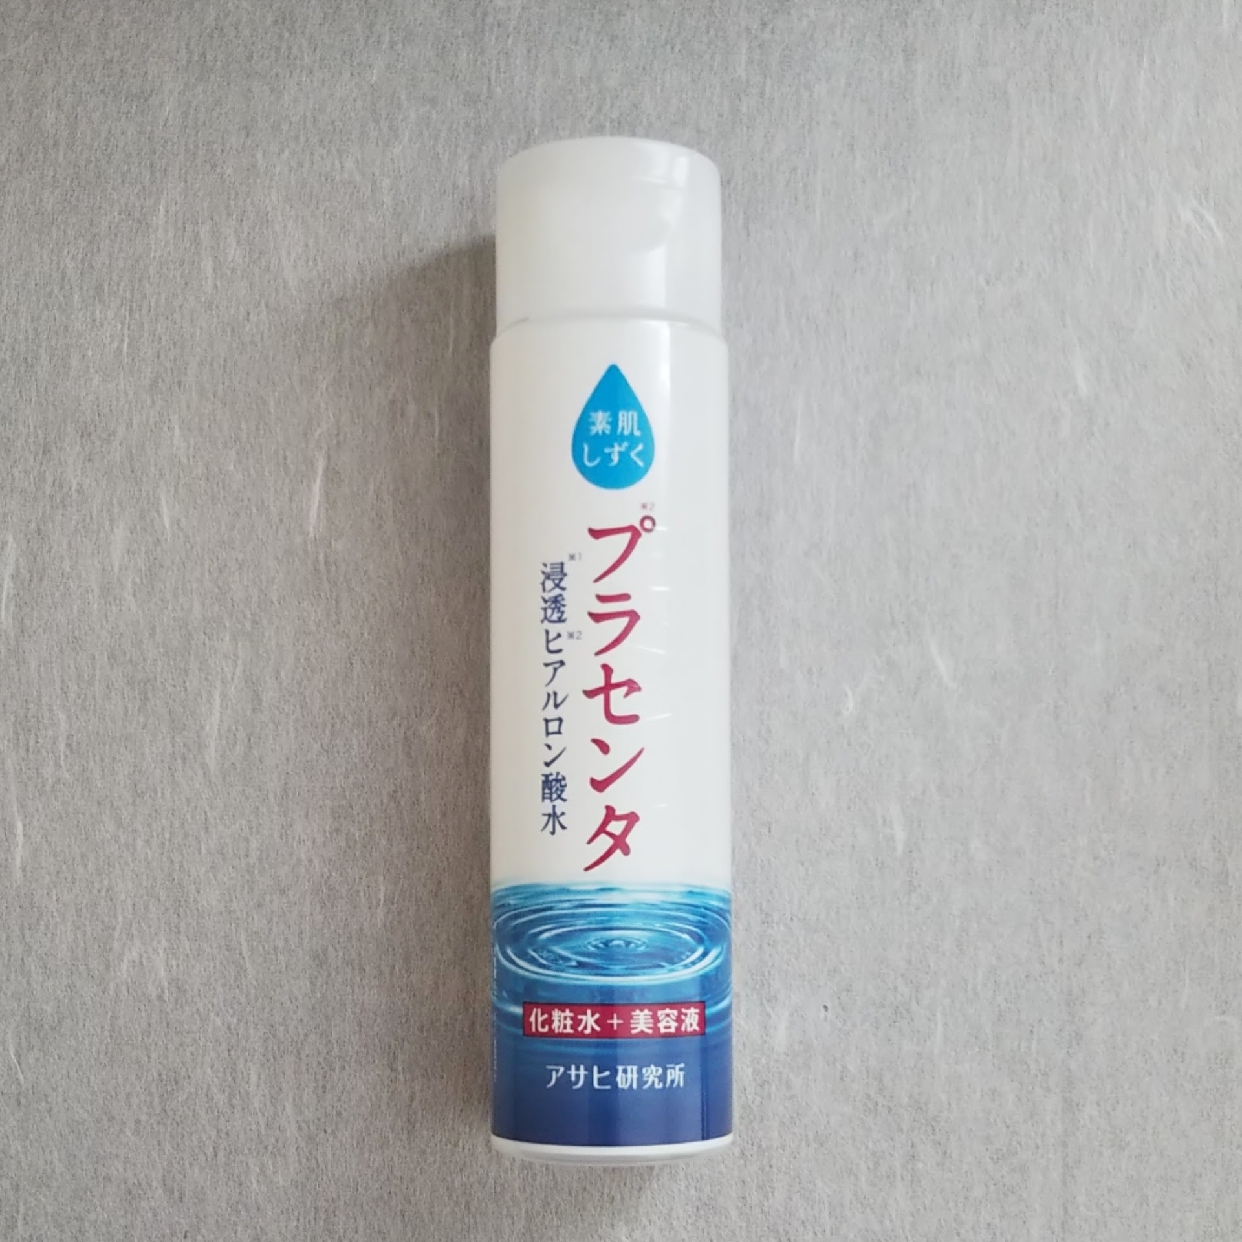 素肌しずく(すはだしずく) ぷるっとしずく化粧水を使ったmaikoさんのクチコミ画像1